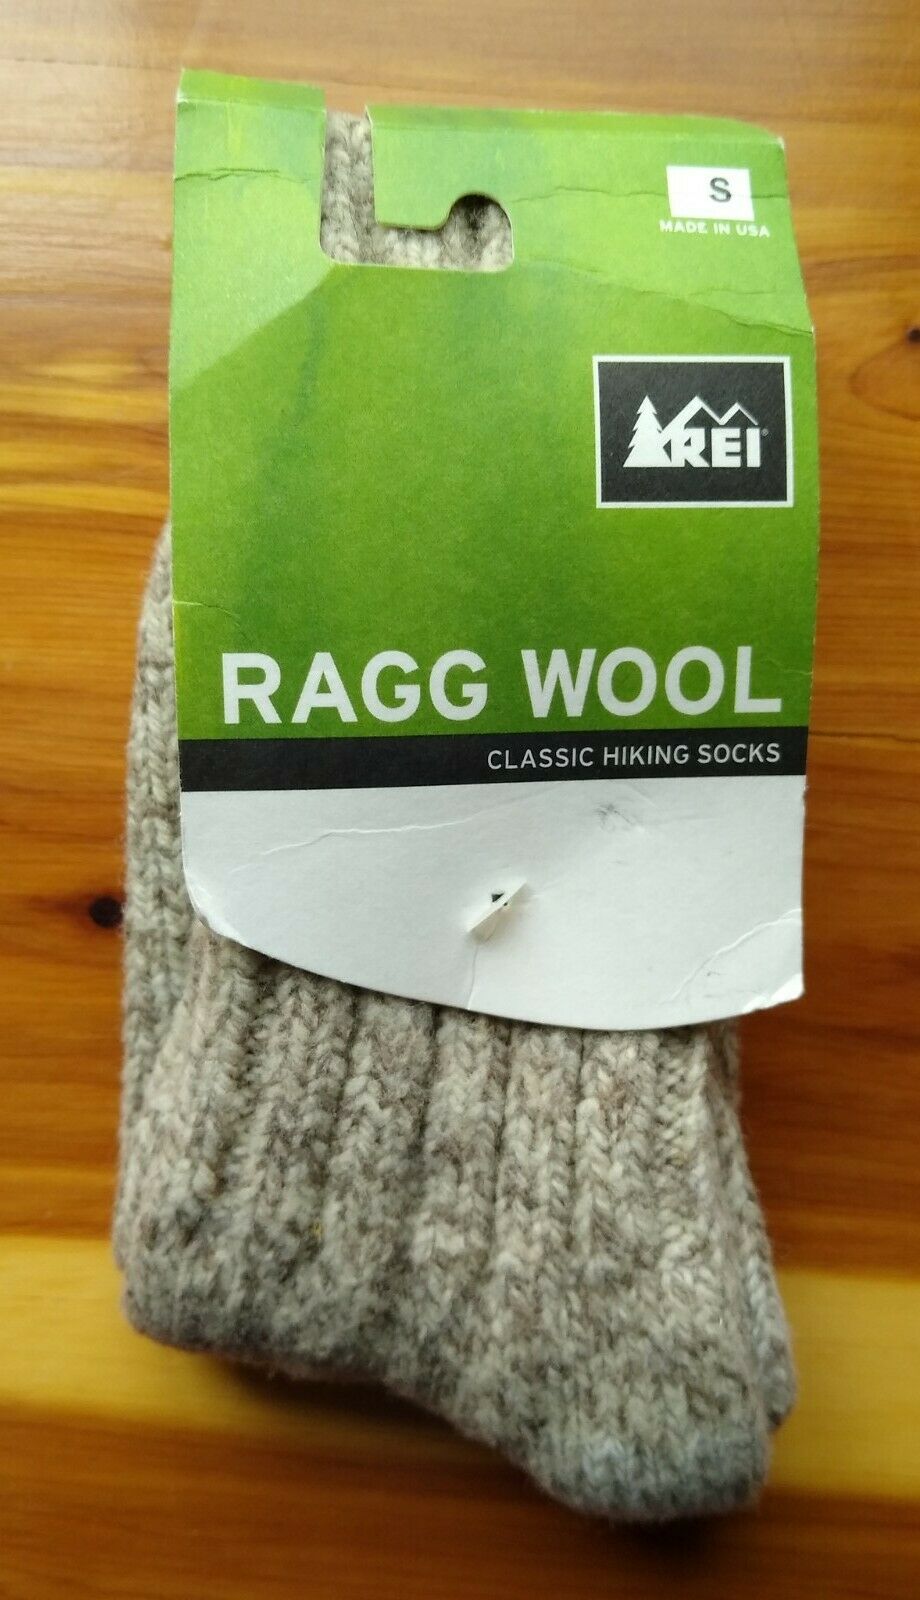 REI Beige Ragg Wool Classic Hiking Socks Size S Women's Shoe 4-6